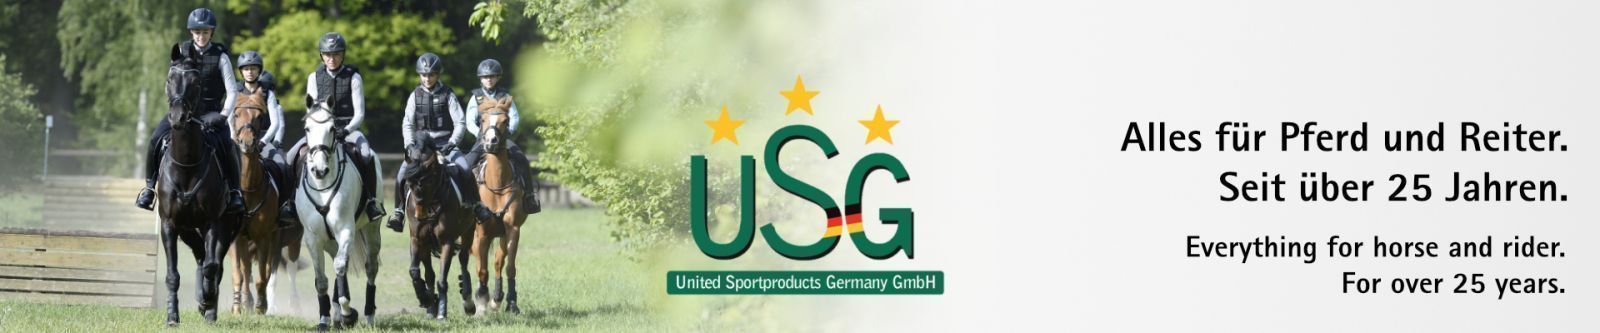 Measurement Charts - USG - United Sportproducts Germany GmbH